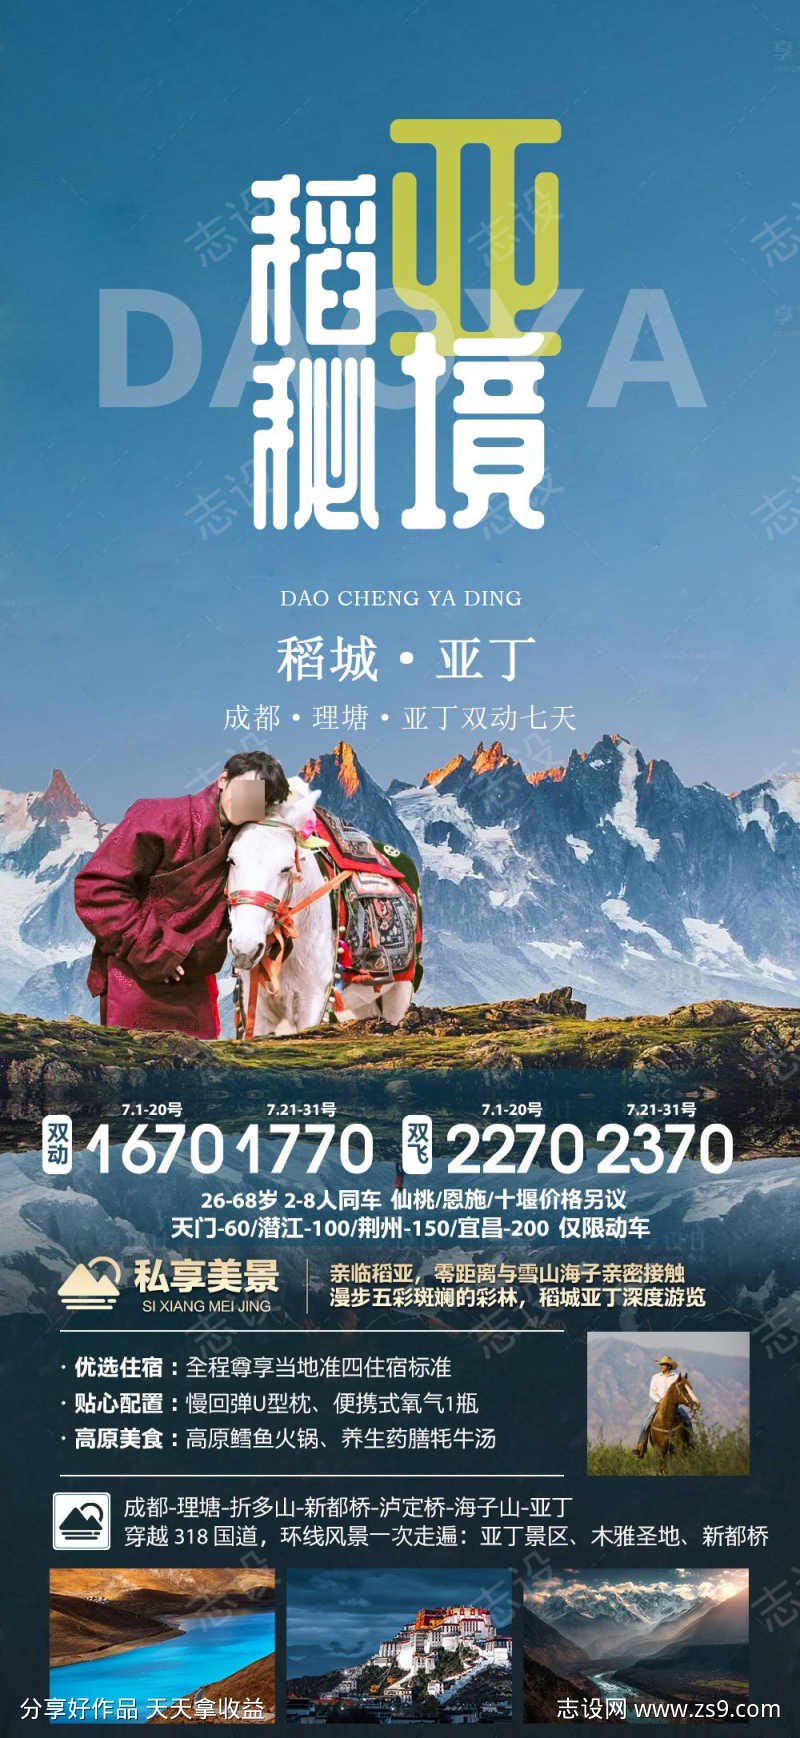 四川稻城亚丁旅游海报广告